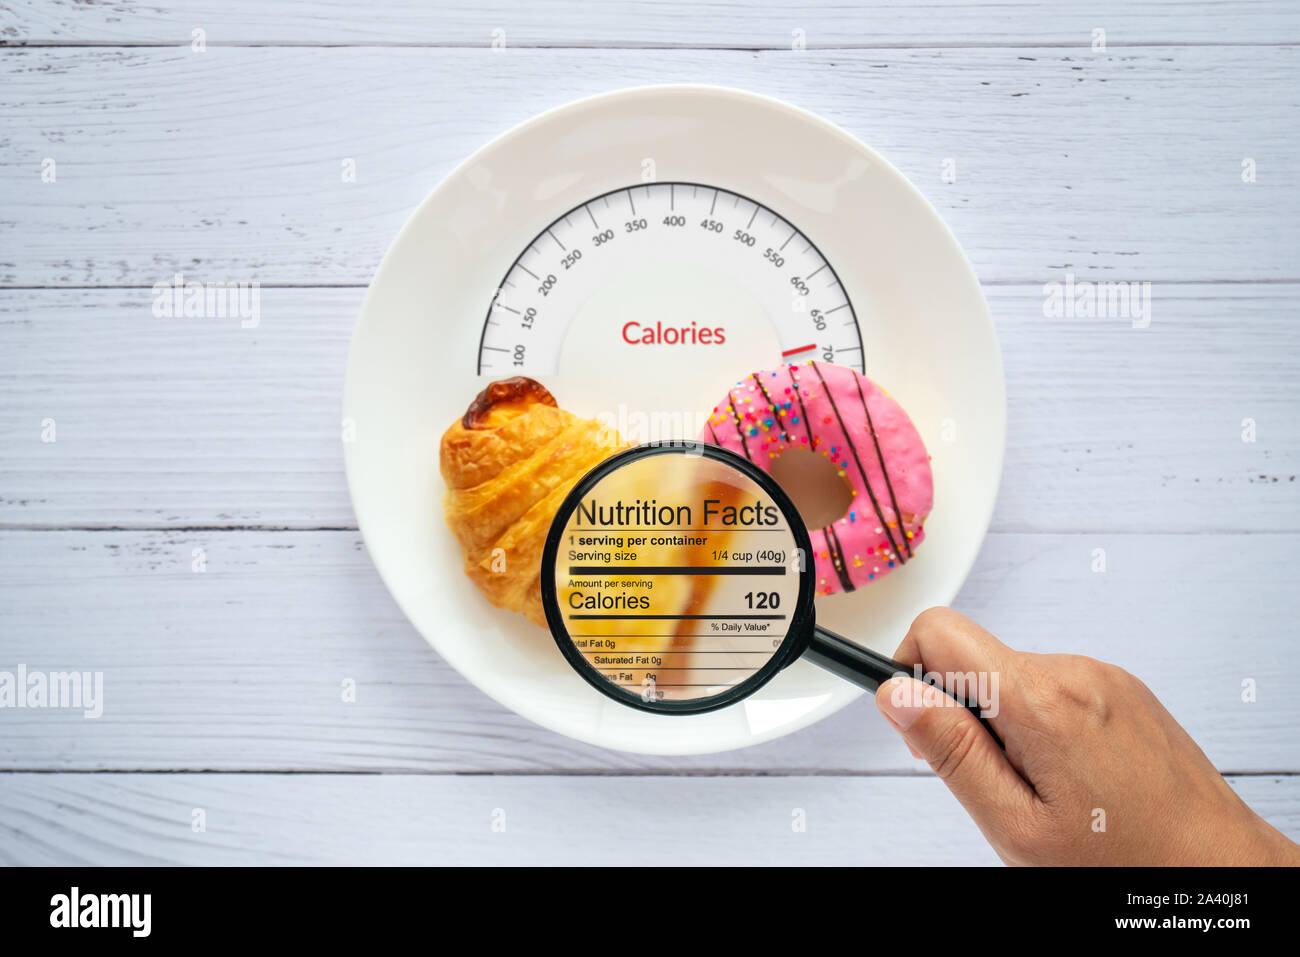 Calories comptage, contrôle des denrées alimentaires et des consommateurs sur la nutrition concept label. beigne et croissant sur plaque blanche avec la langue des Calories ame Banque D'Images